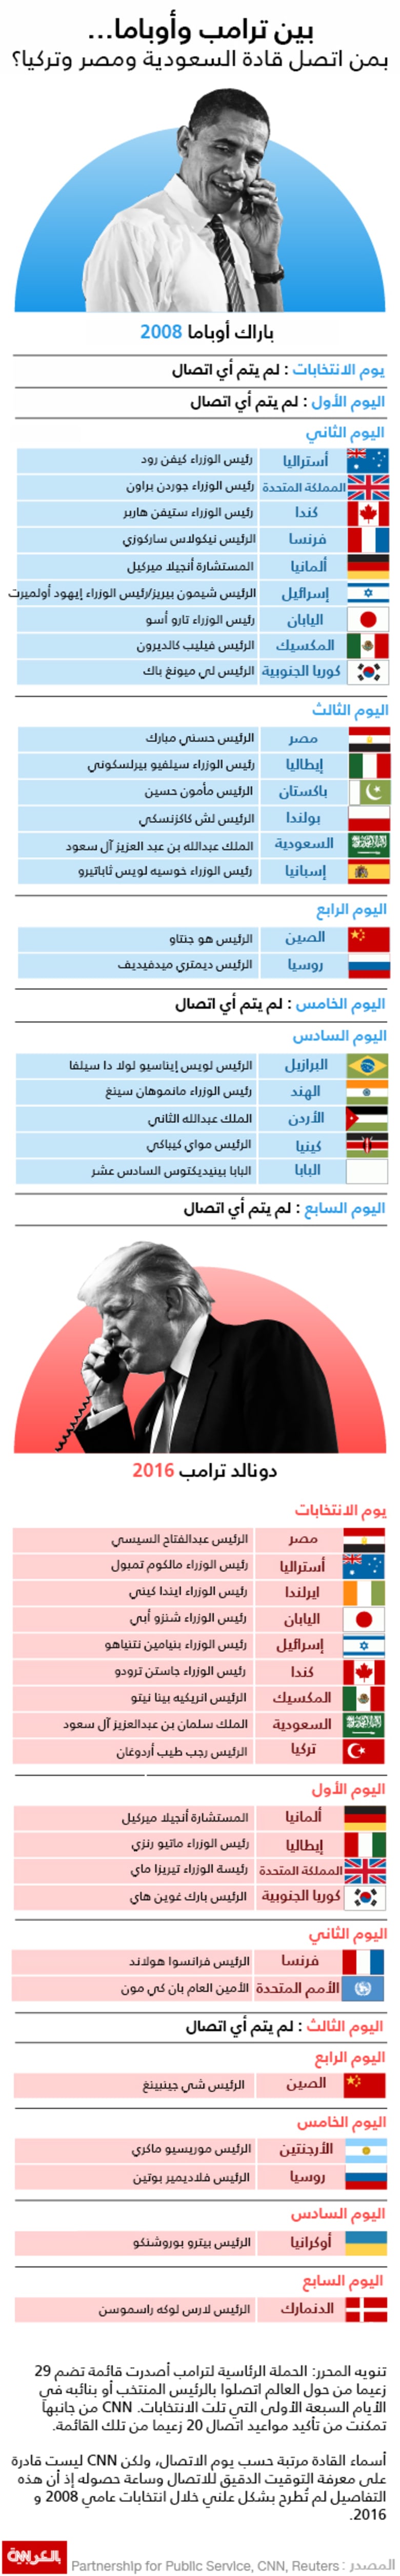 بين ترامب وأوباما.. بمن اتصل قادة السعودية ومصر وتركيا؟